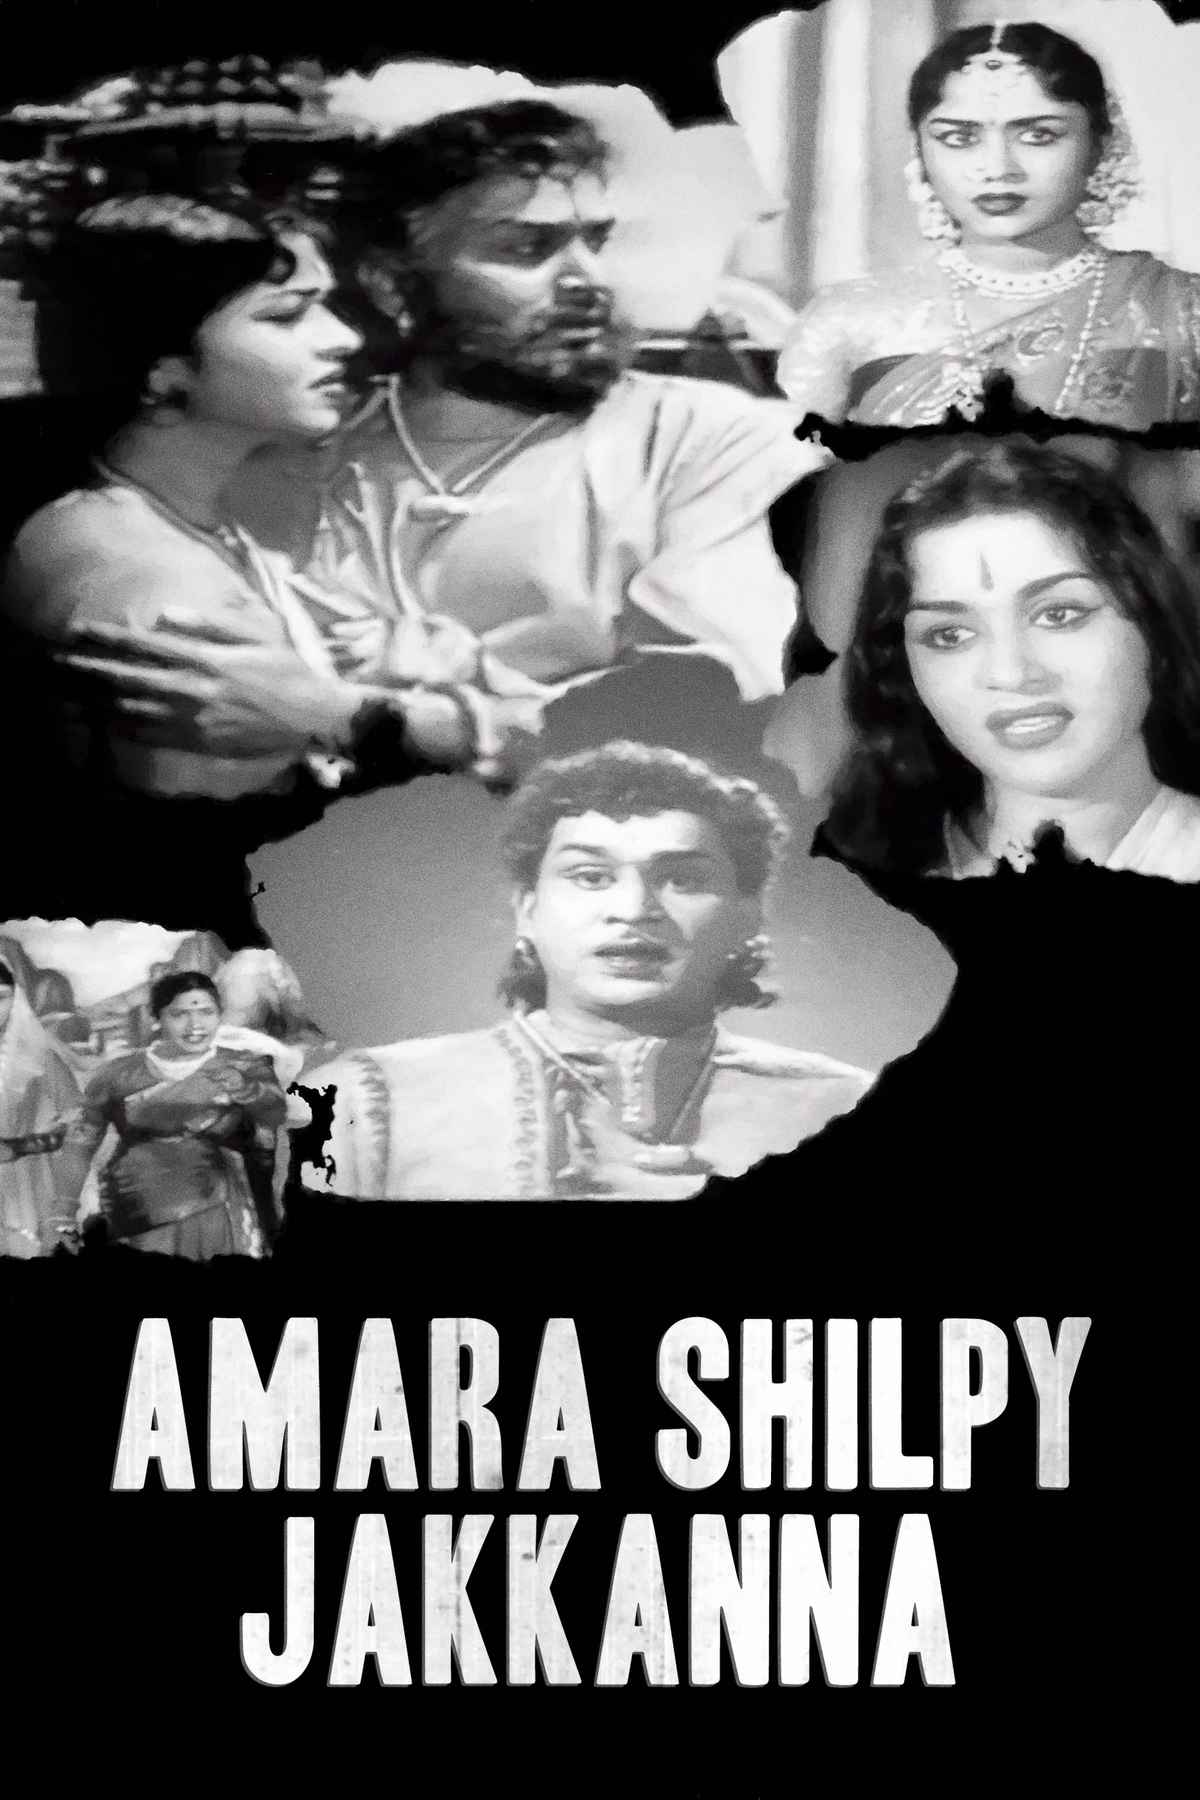 Amara Shilpy Jakkanna